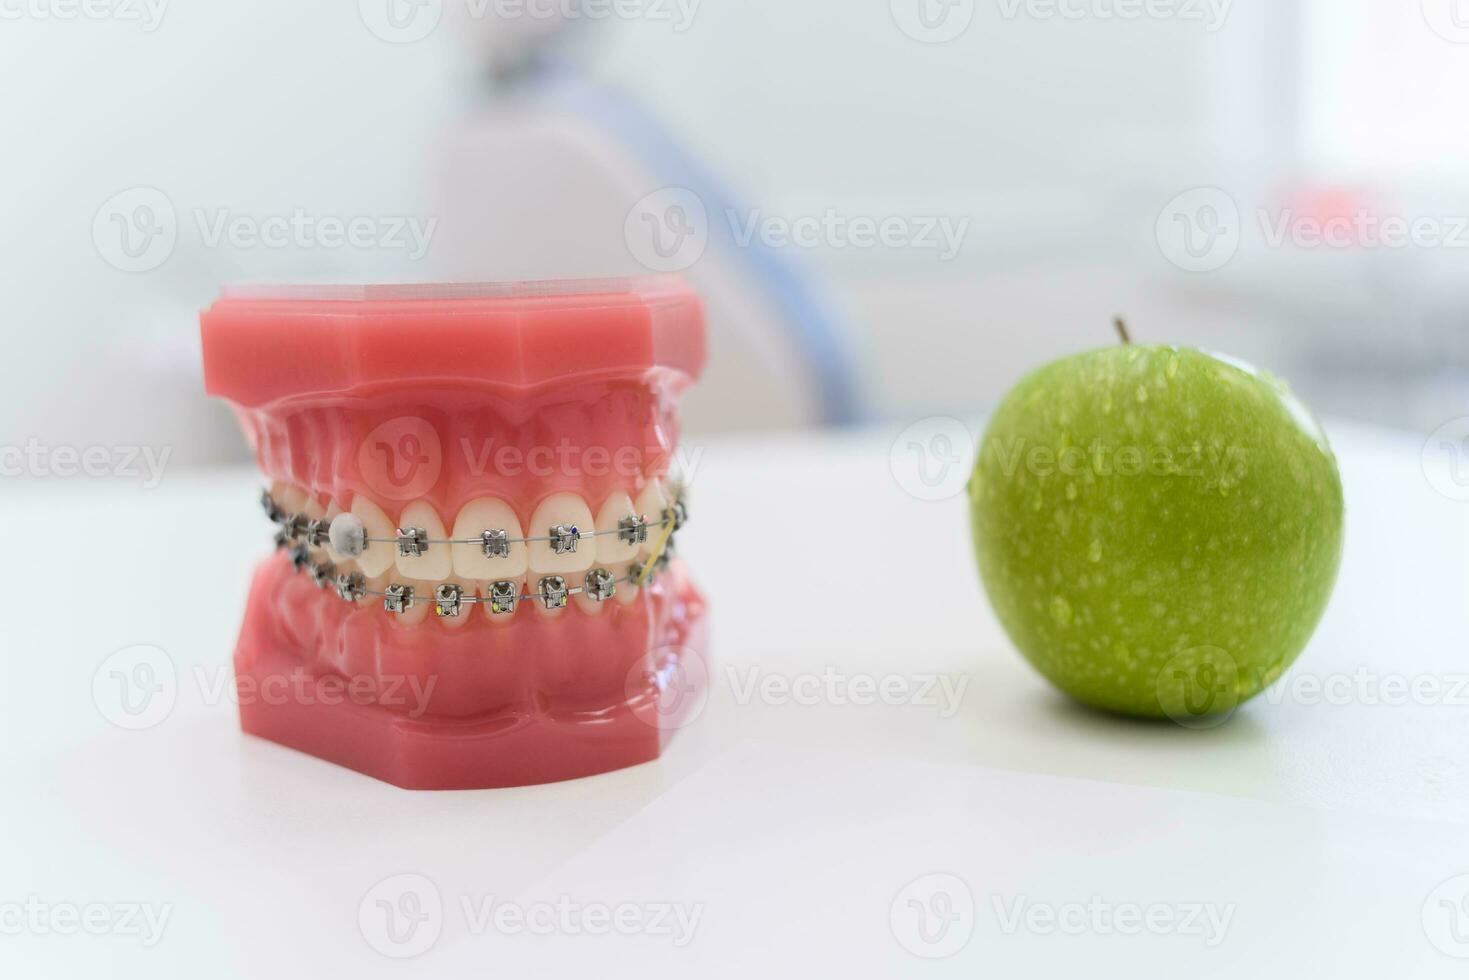 artificiell käftar med tandställning lögn med en grön äpple på de tabell foto